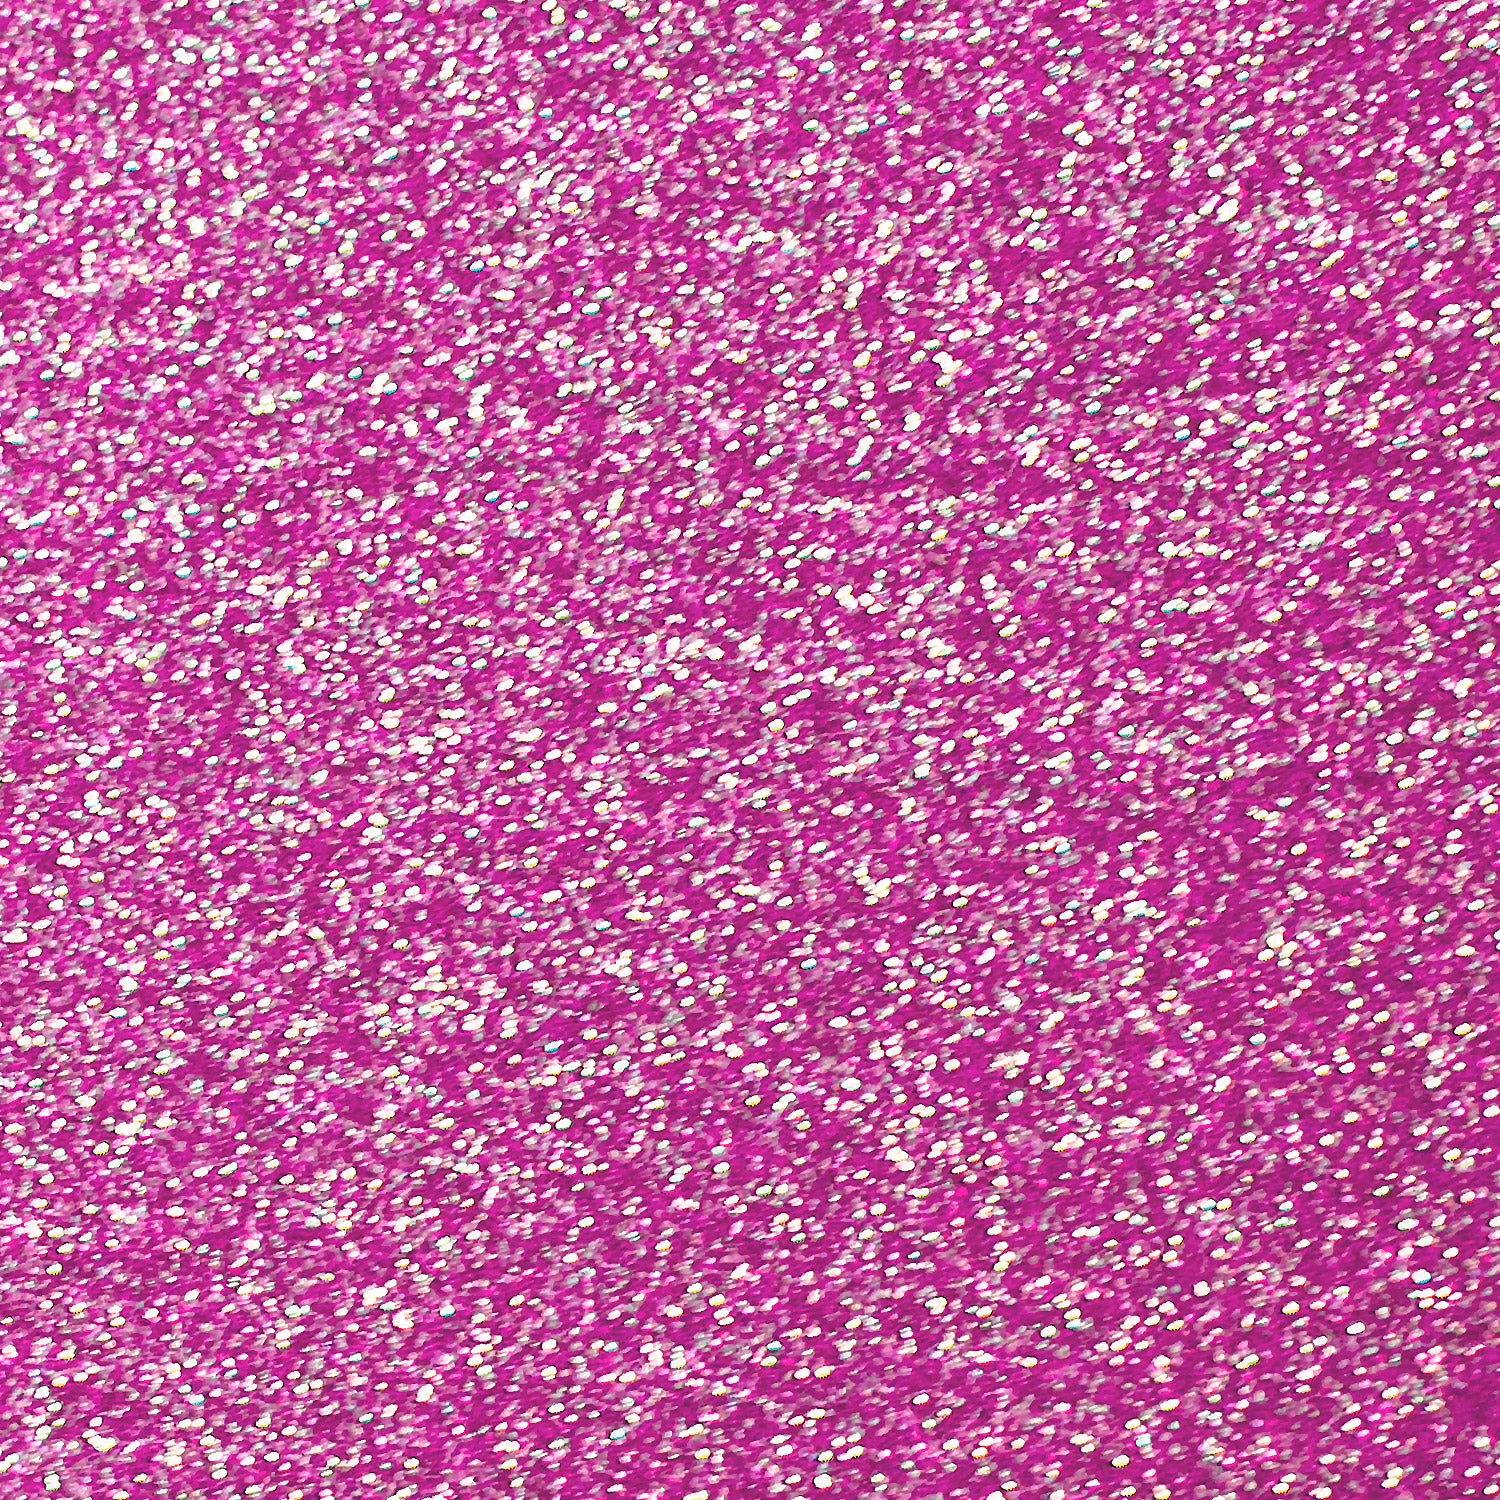 Siser Glitter HTV - Hot Pink